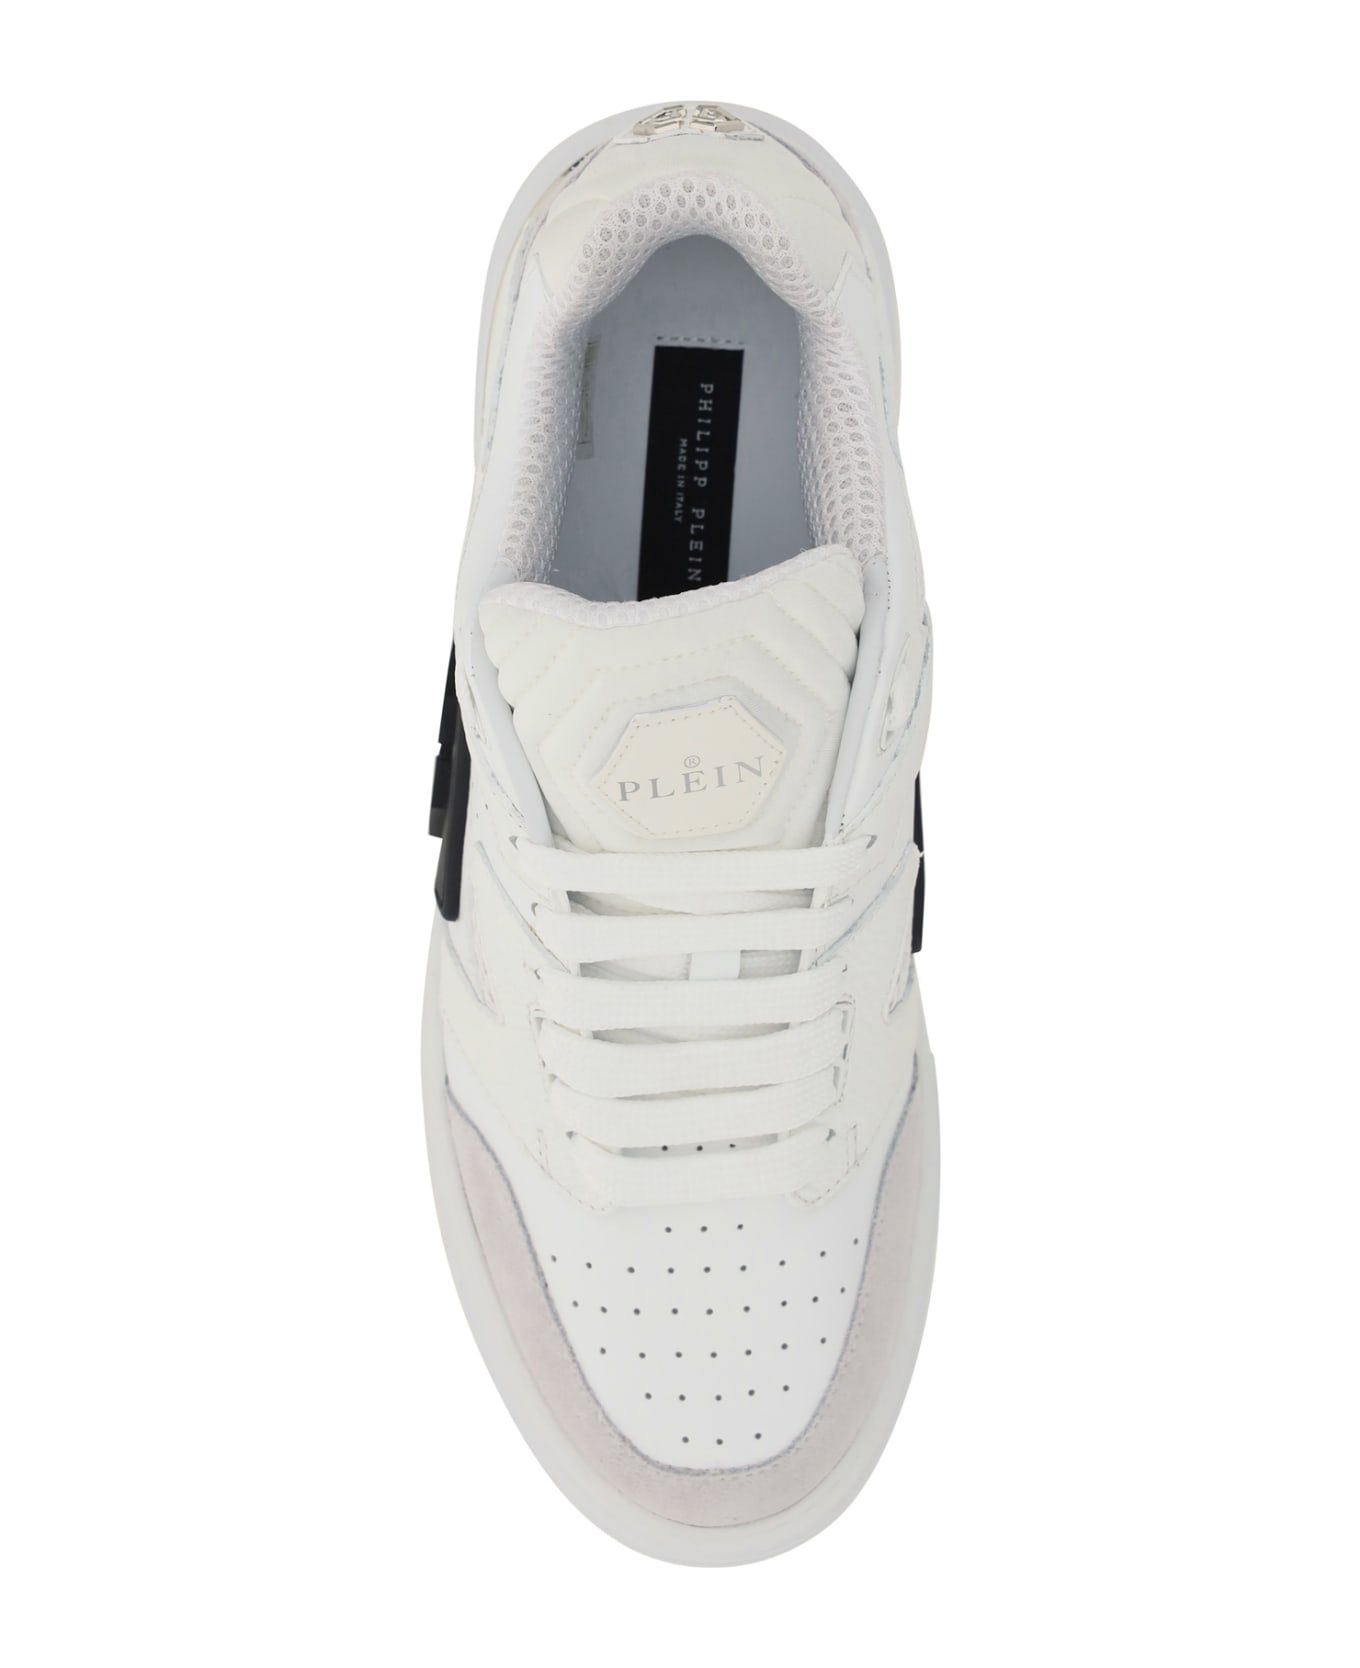 Philipp Plein Sneakers - White